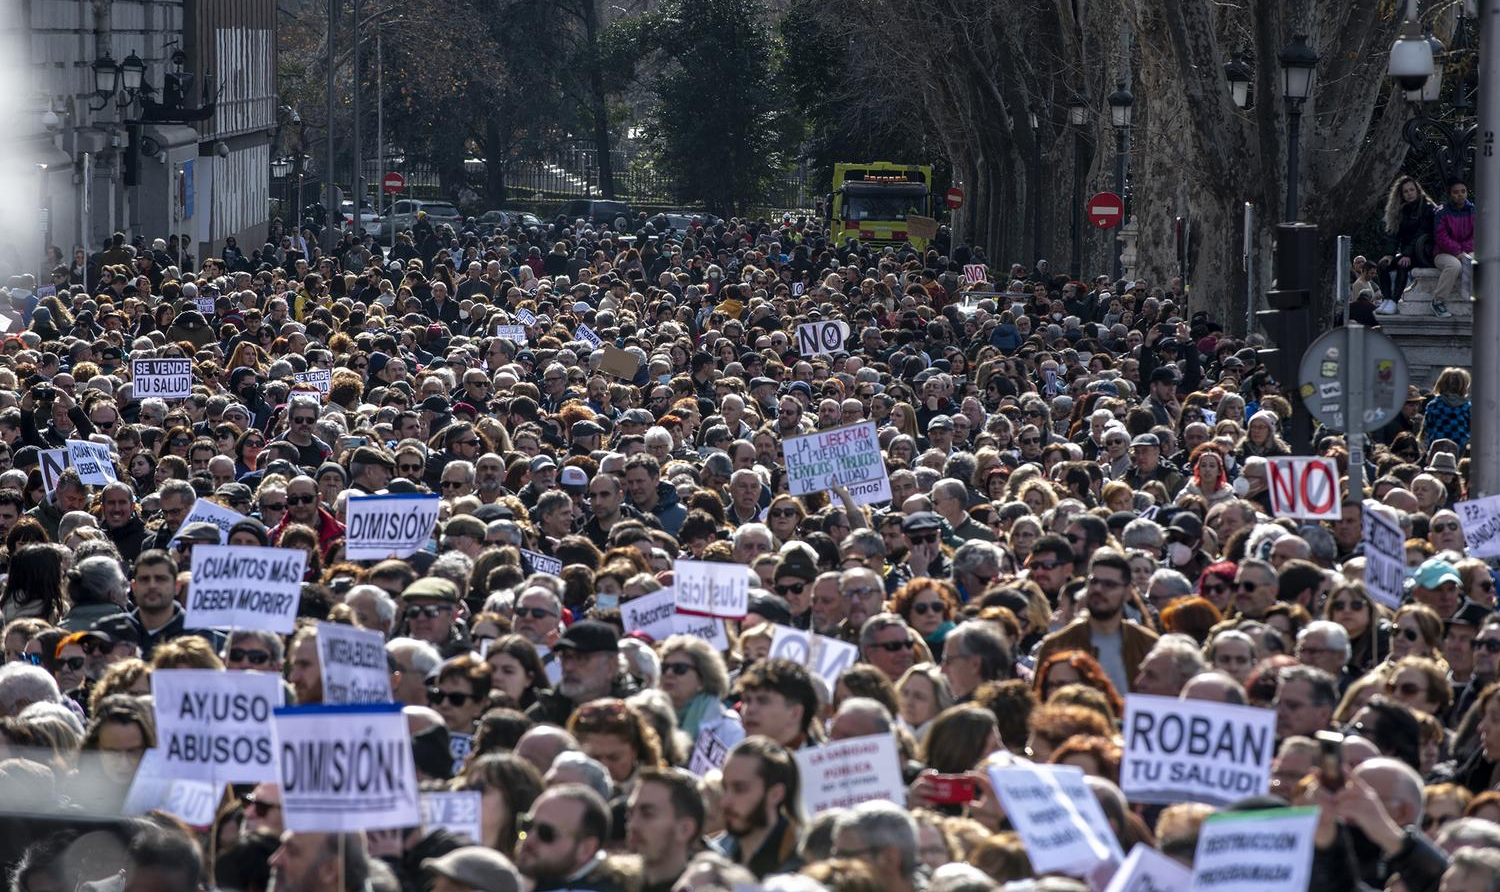 Mensagem do cartaz que encabeçava a manifestação era “Madrid se levanta e exige saúde pública”